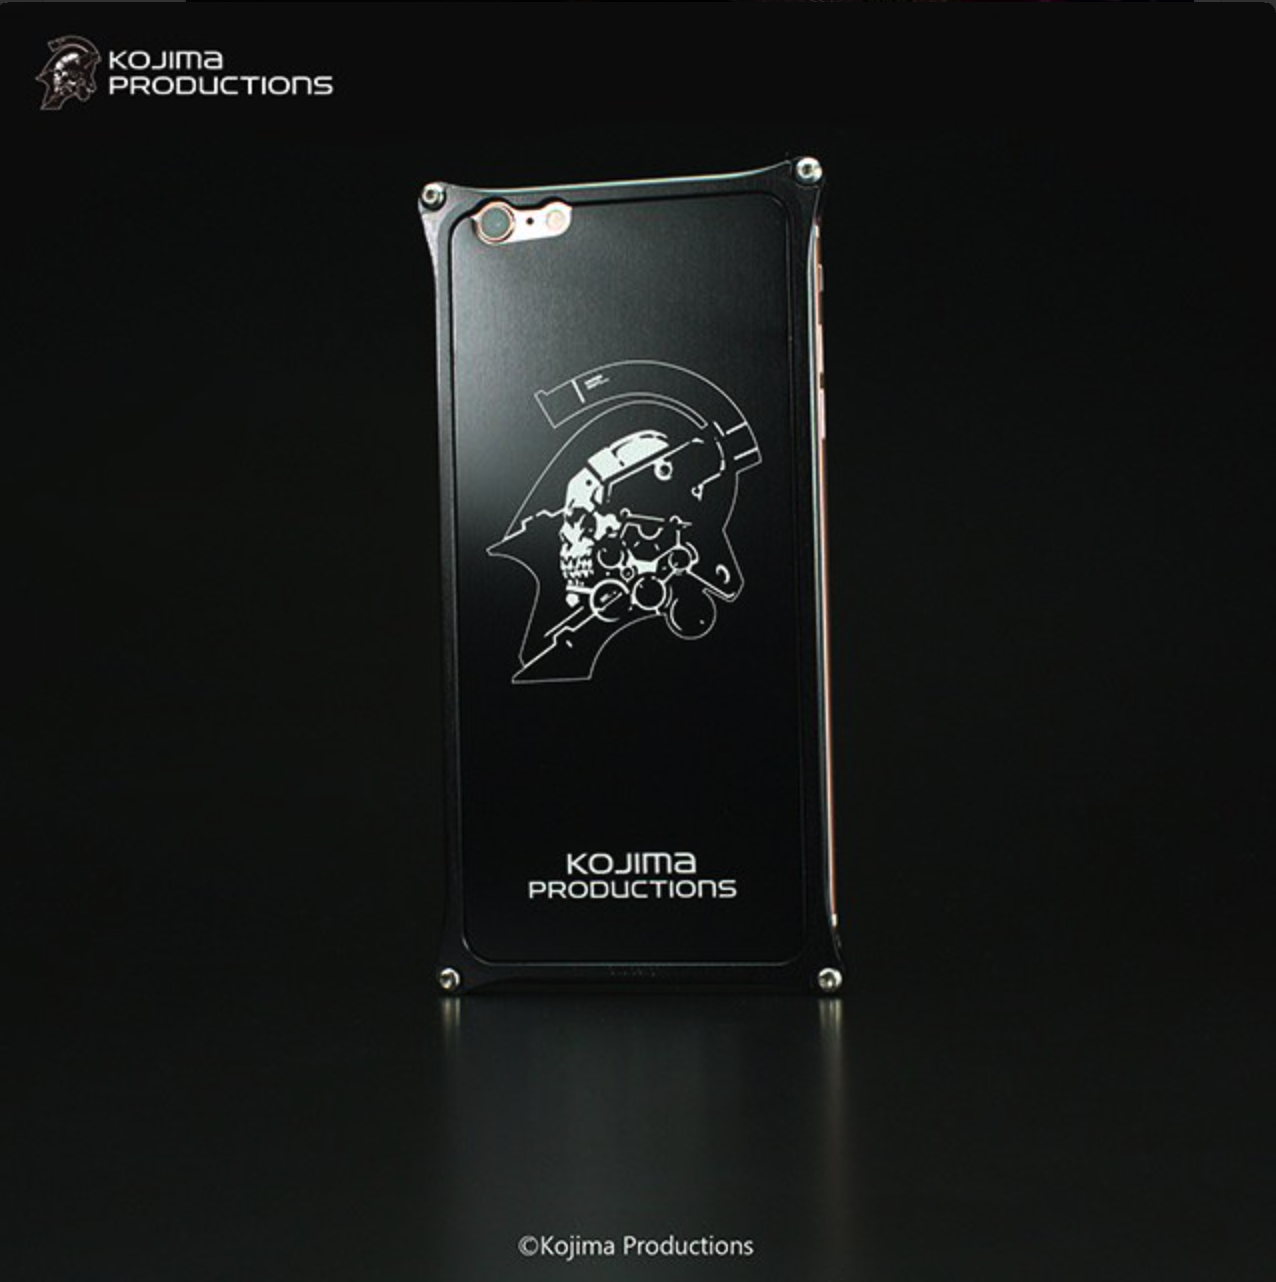 遊戲迷必買 小島工作室推出iphone 超強 保護殼特別設計 New Mobilelife 流動日報